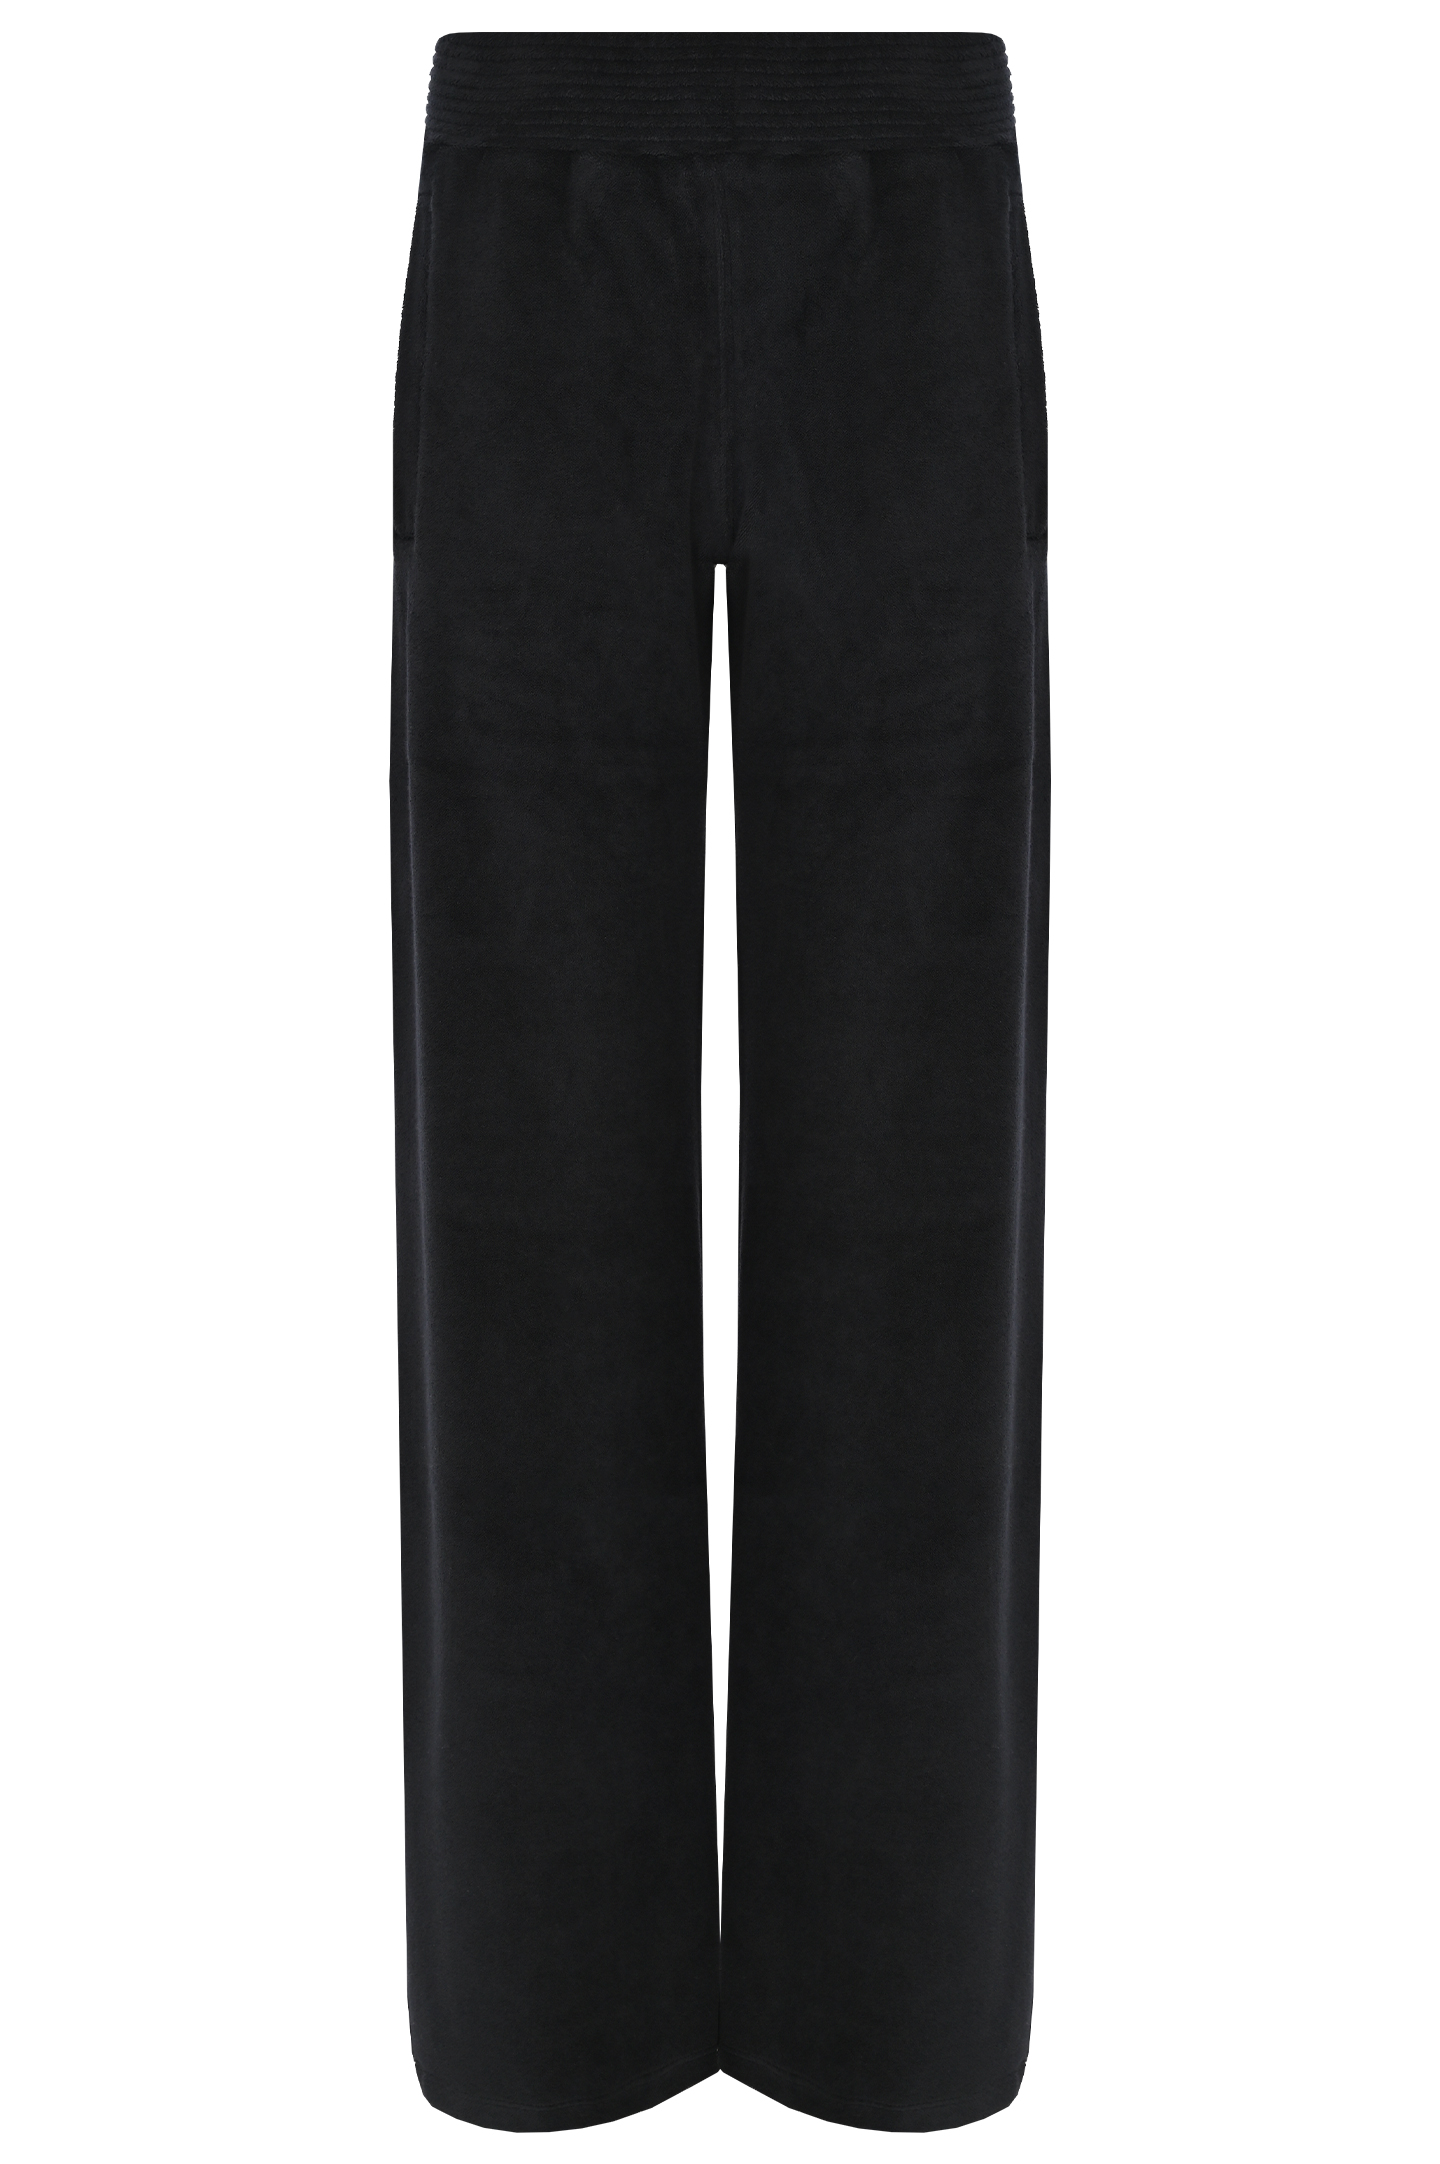 Спортивные широкие брюки JACOB LEE WJP9625, цвет: Черный, Женский